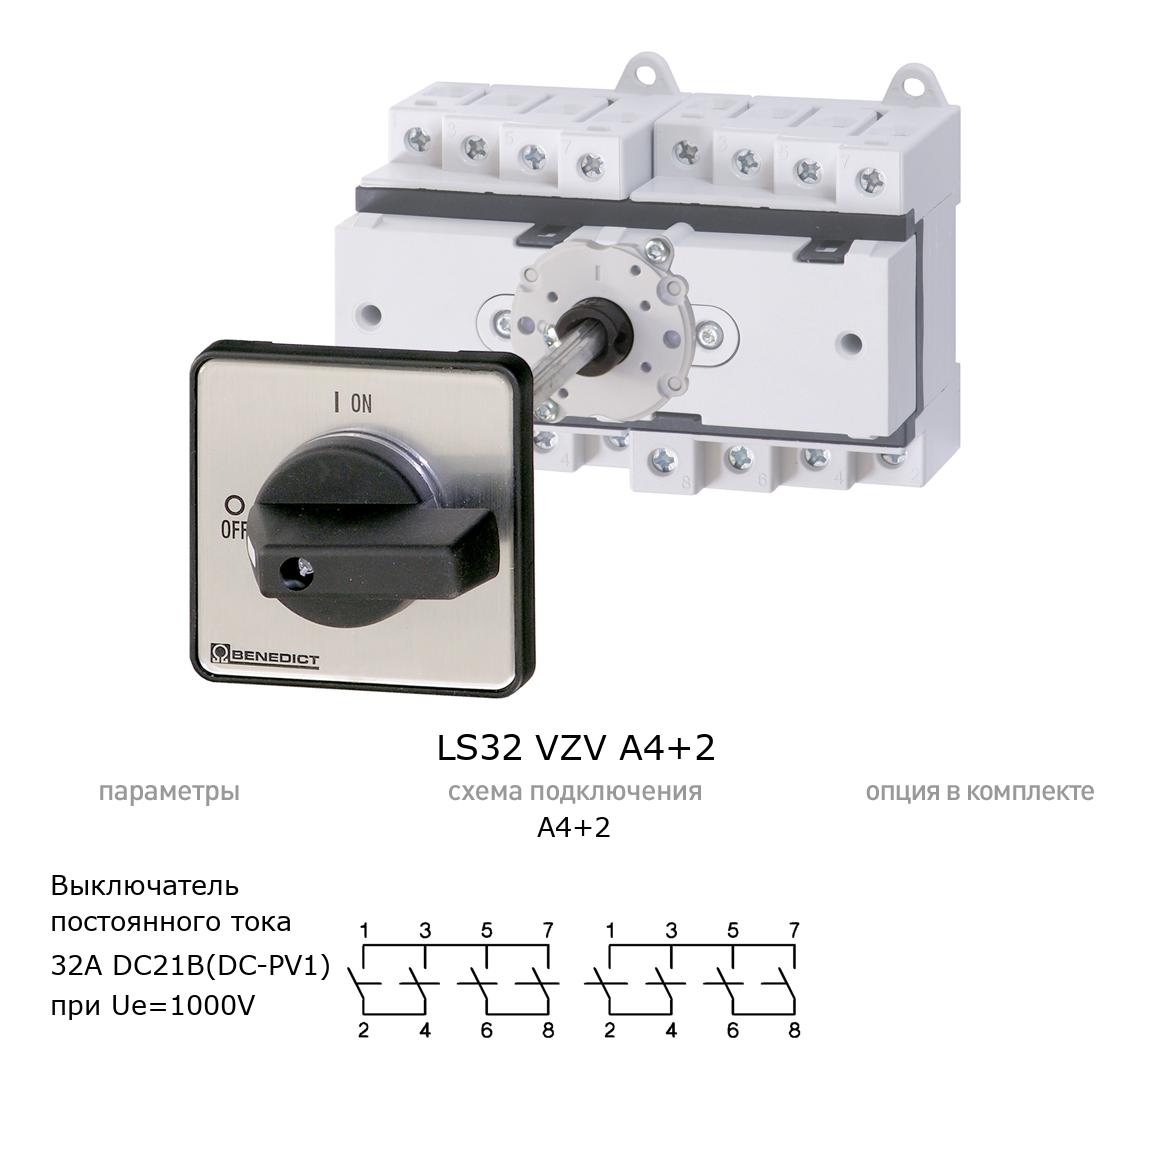 Кулачковый переключатель для постоянного тока (DC) LS32 VZV A4+2 BENEDICT